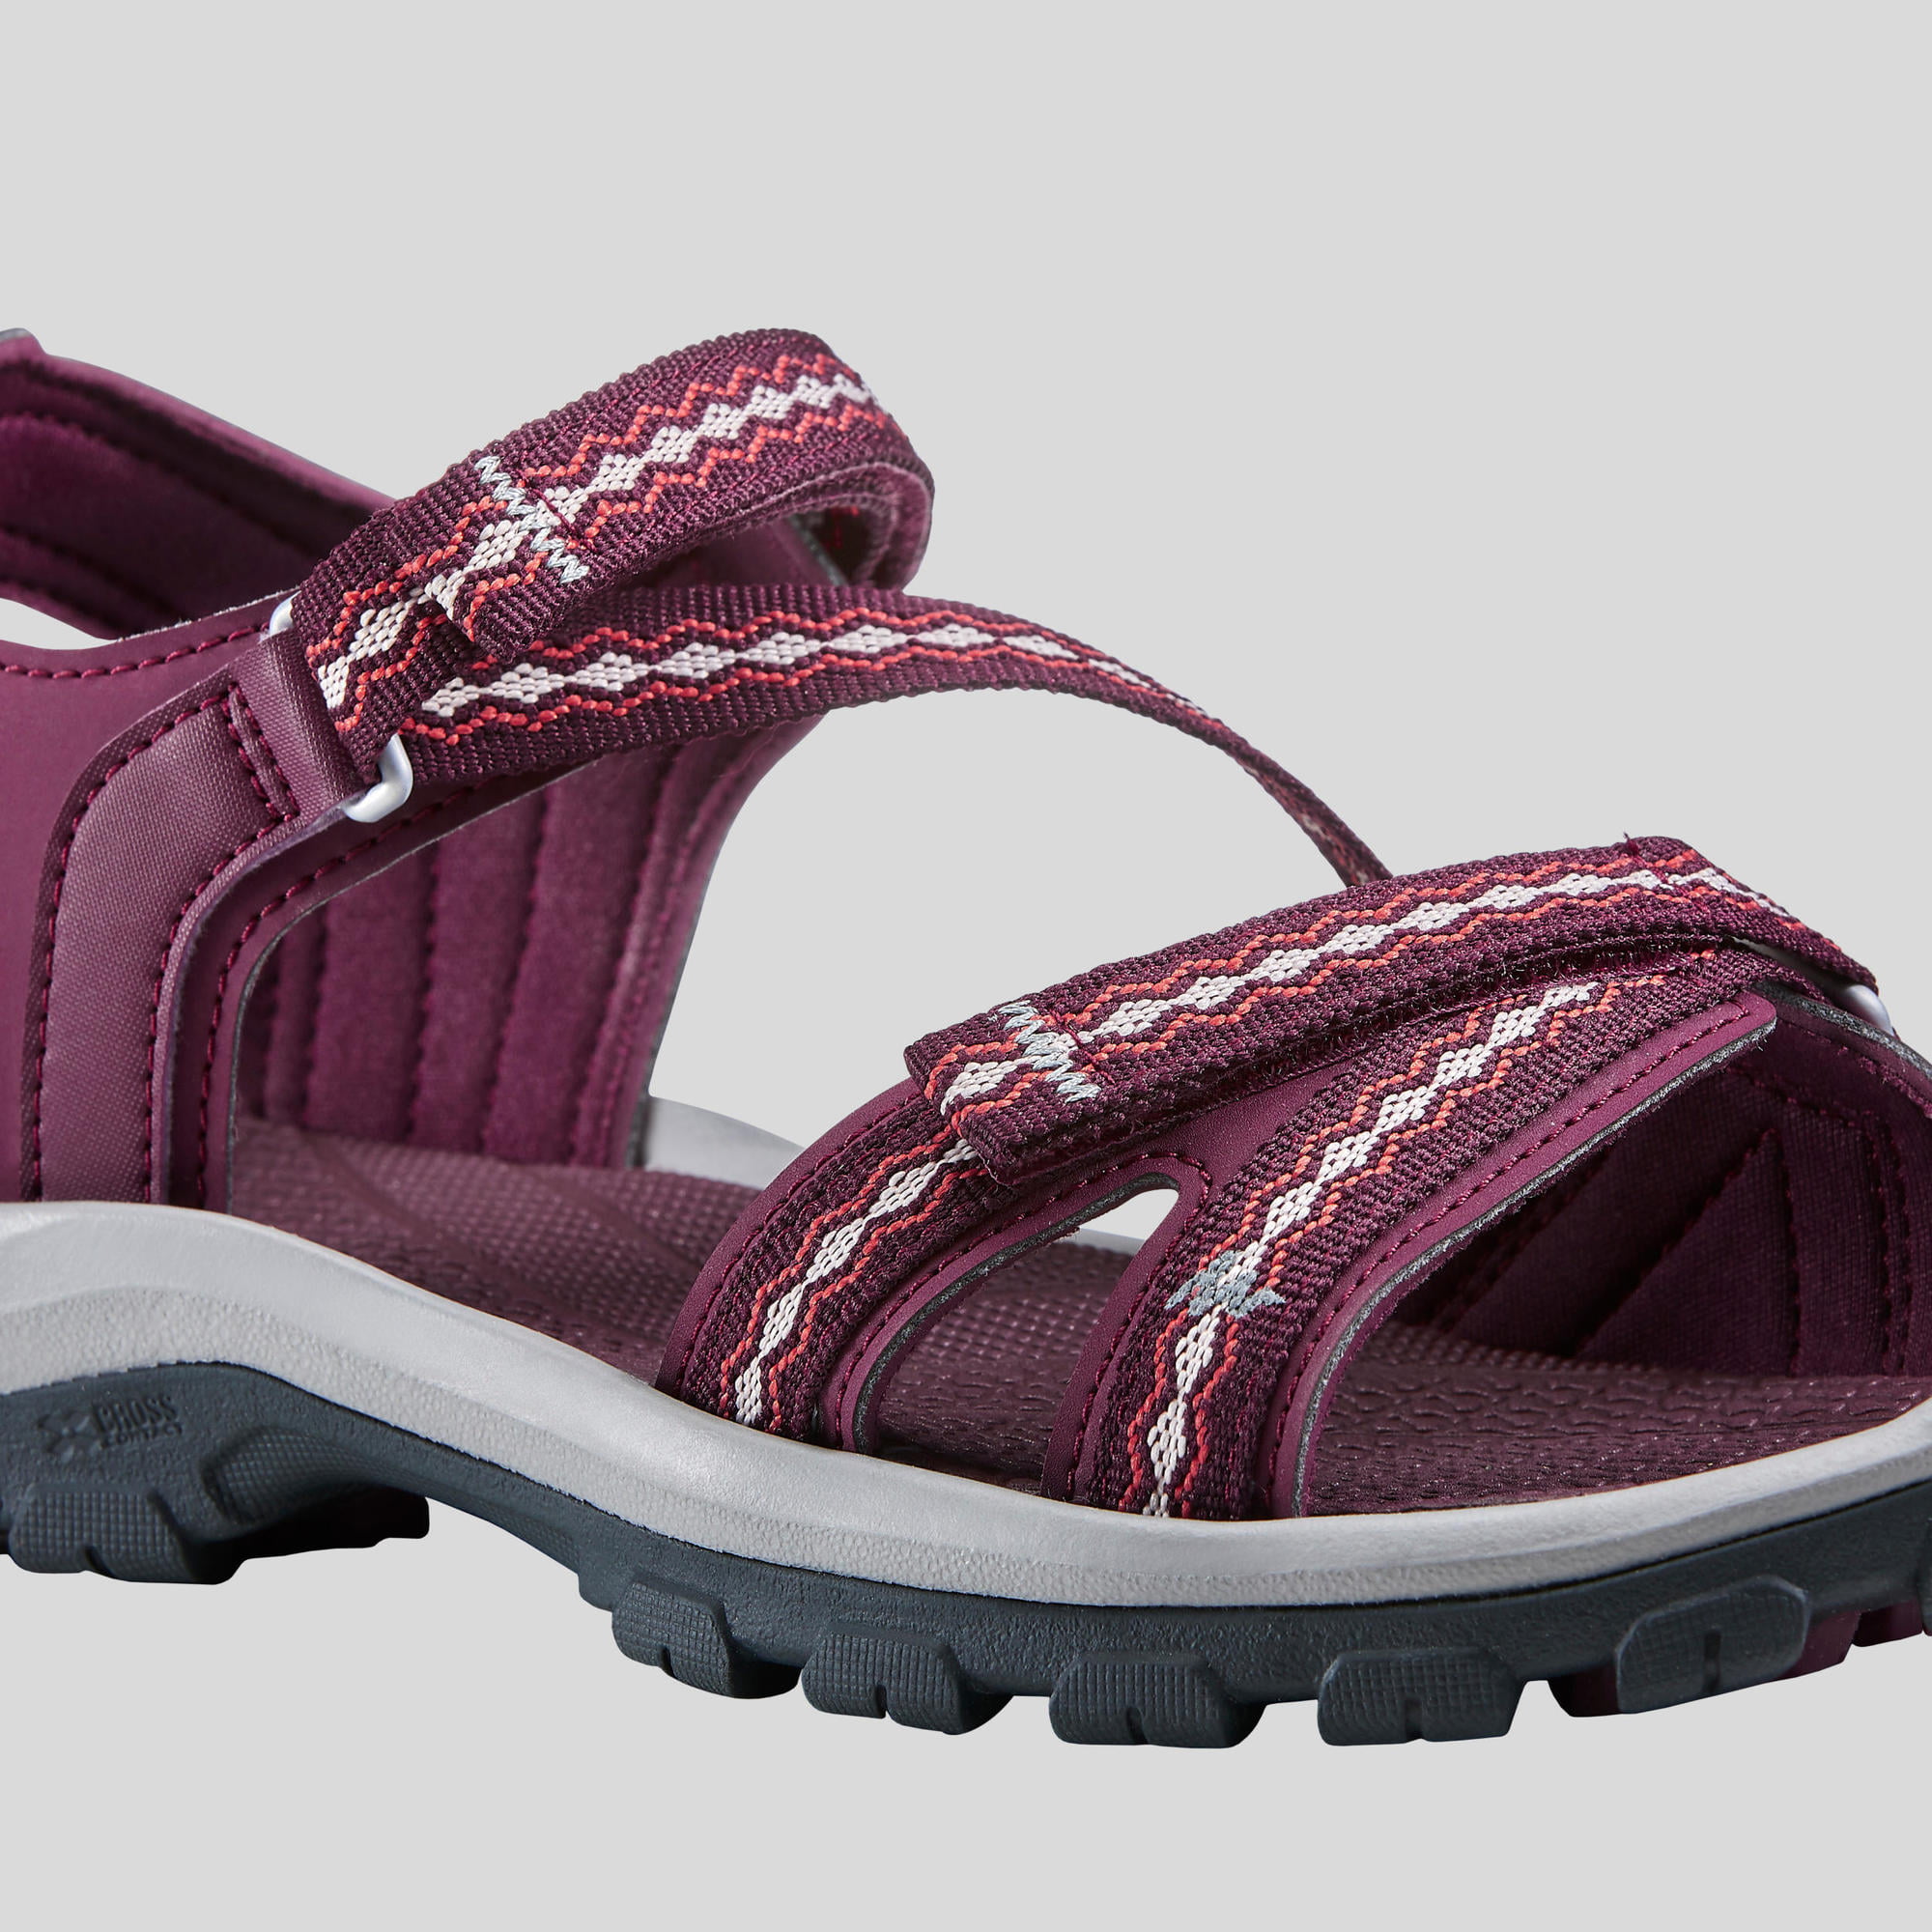 quechua women's sandals